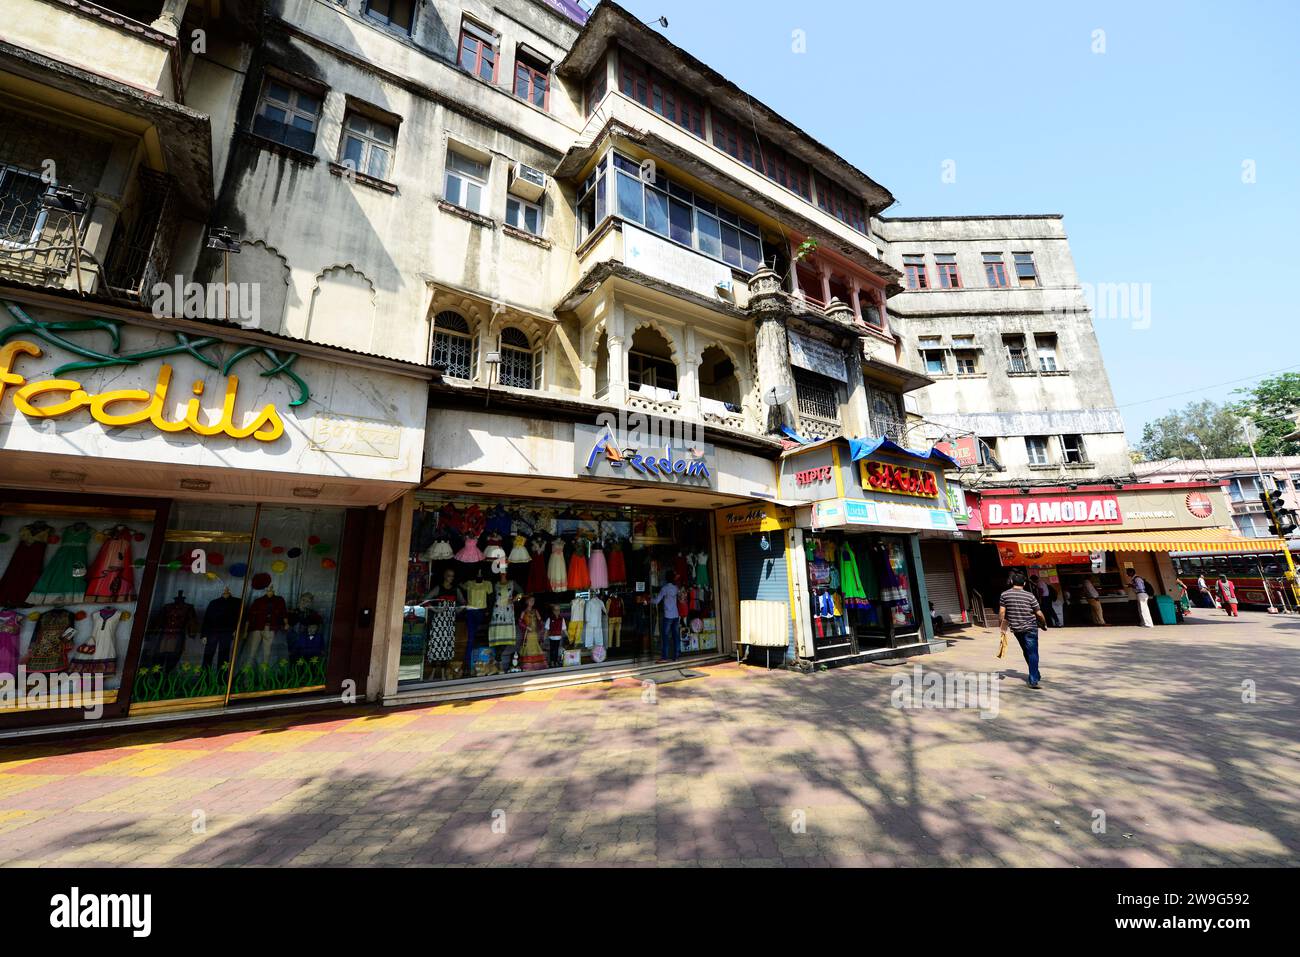 Marcher dans les rues de Dadar, Mumbai, Inde. Banque D'Images